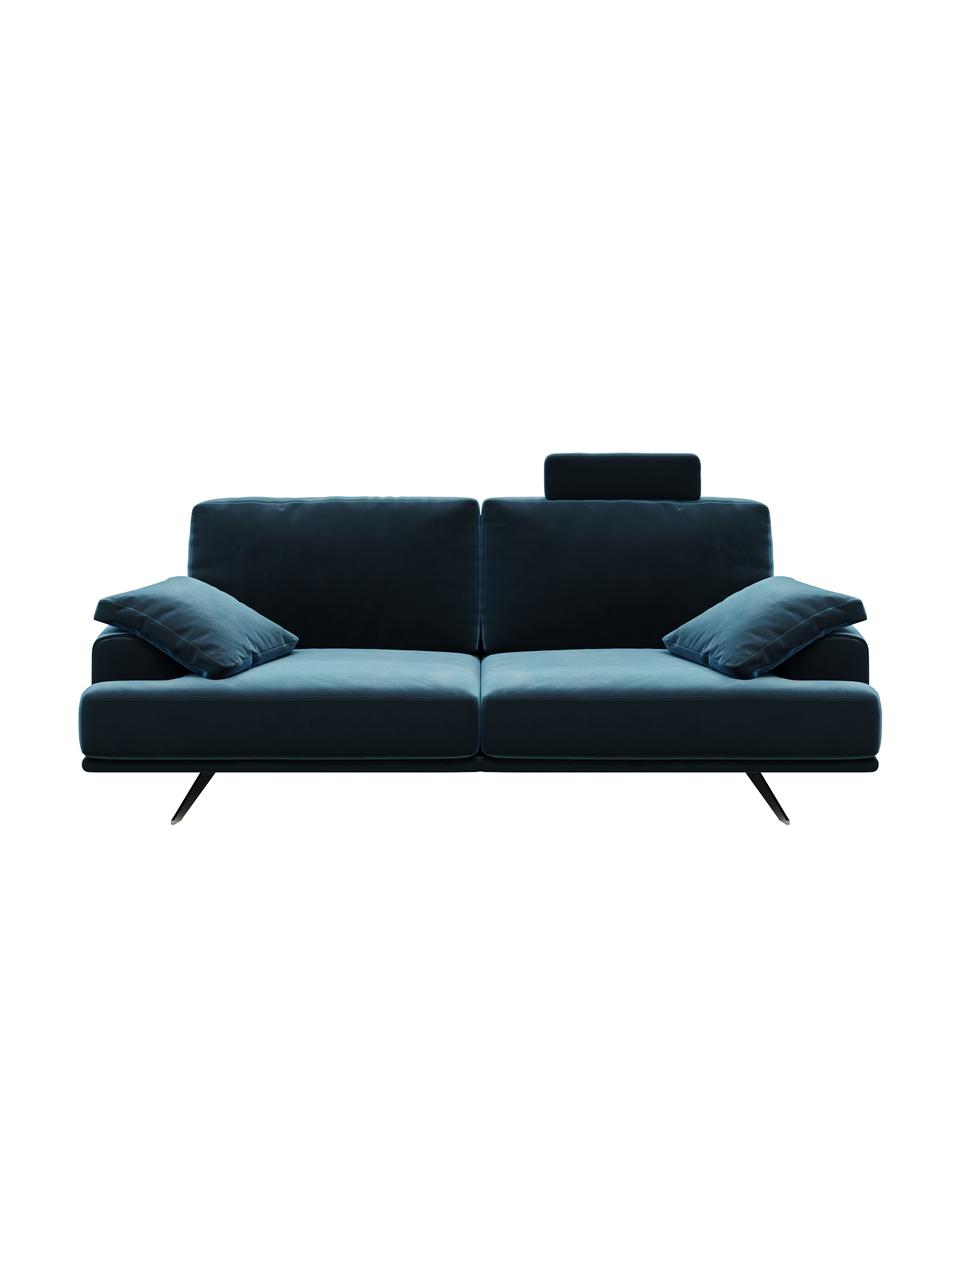 Sofa z aksamitu Prado (2-osobowa), Tapicerka: 100% aksamit poliestrowy,, Nogi: metal lakierowany, Ciemny niebieski, S 220 x G 107 cm